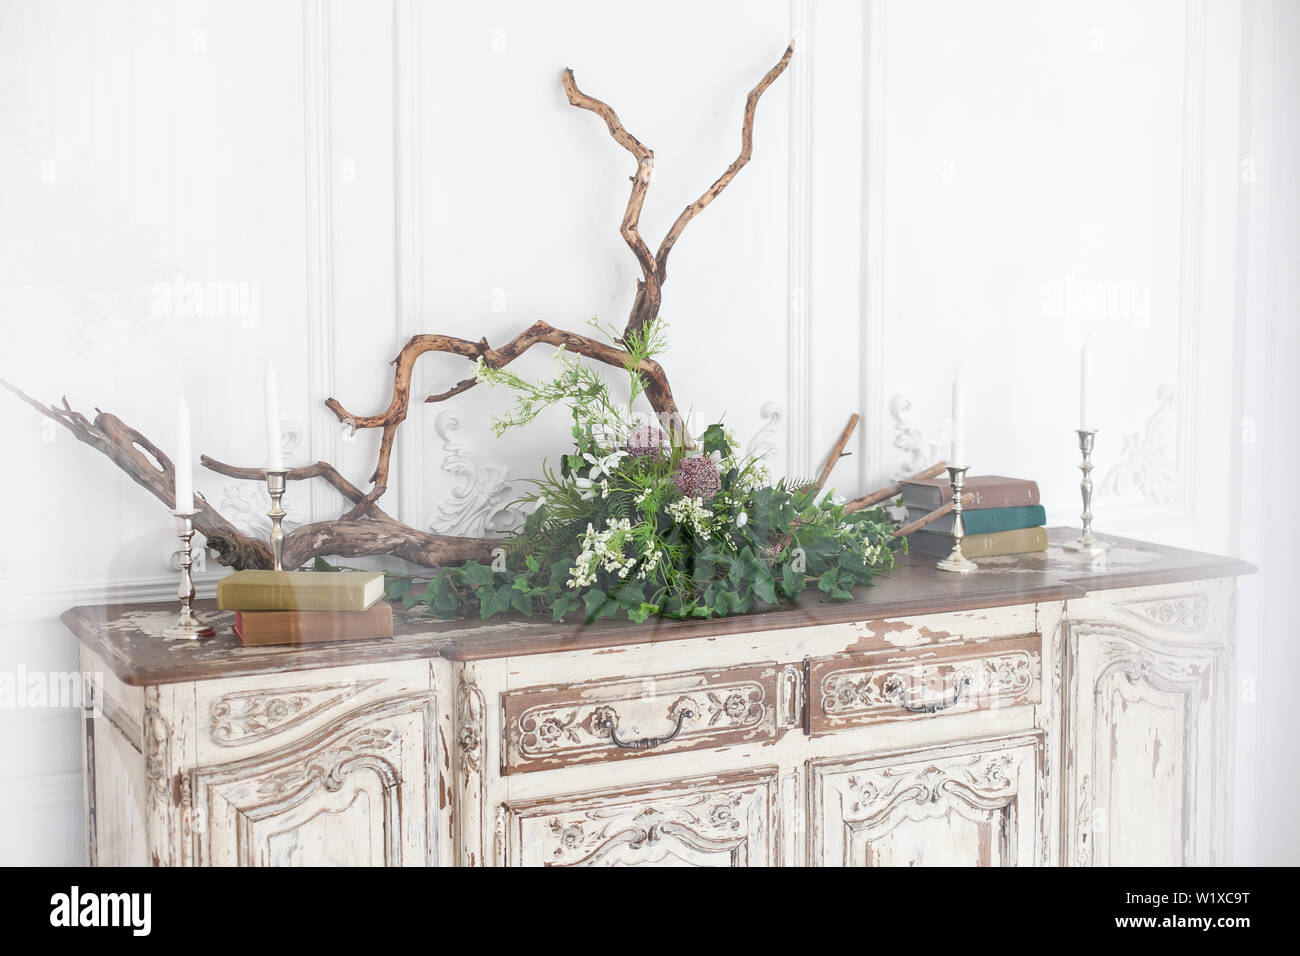 Die alte Rokoko Kommode ist mit Büchern, Kerzen, Treibholz und Pflanzen gegen die Wand mit Stuck verziert. Stockfoto